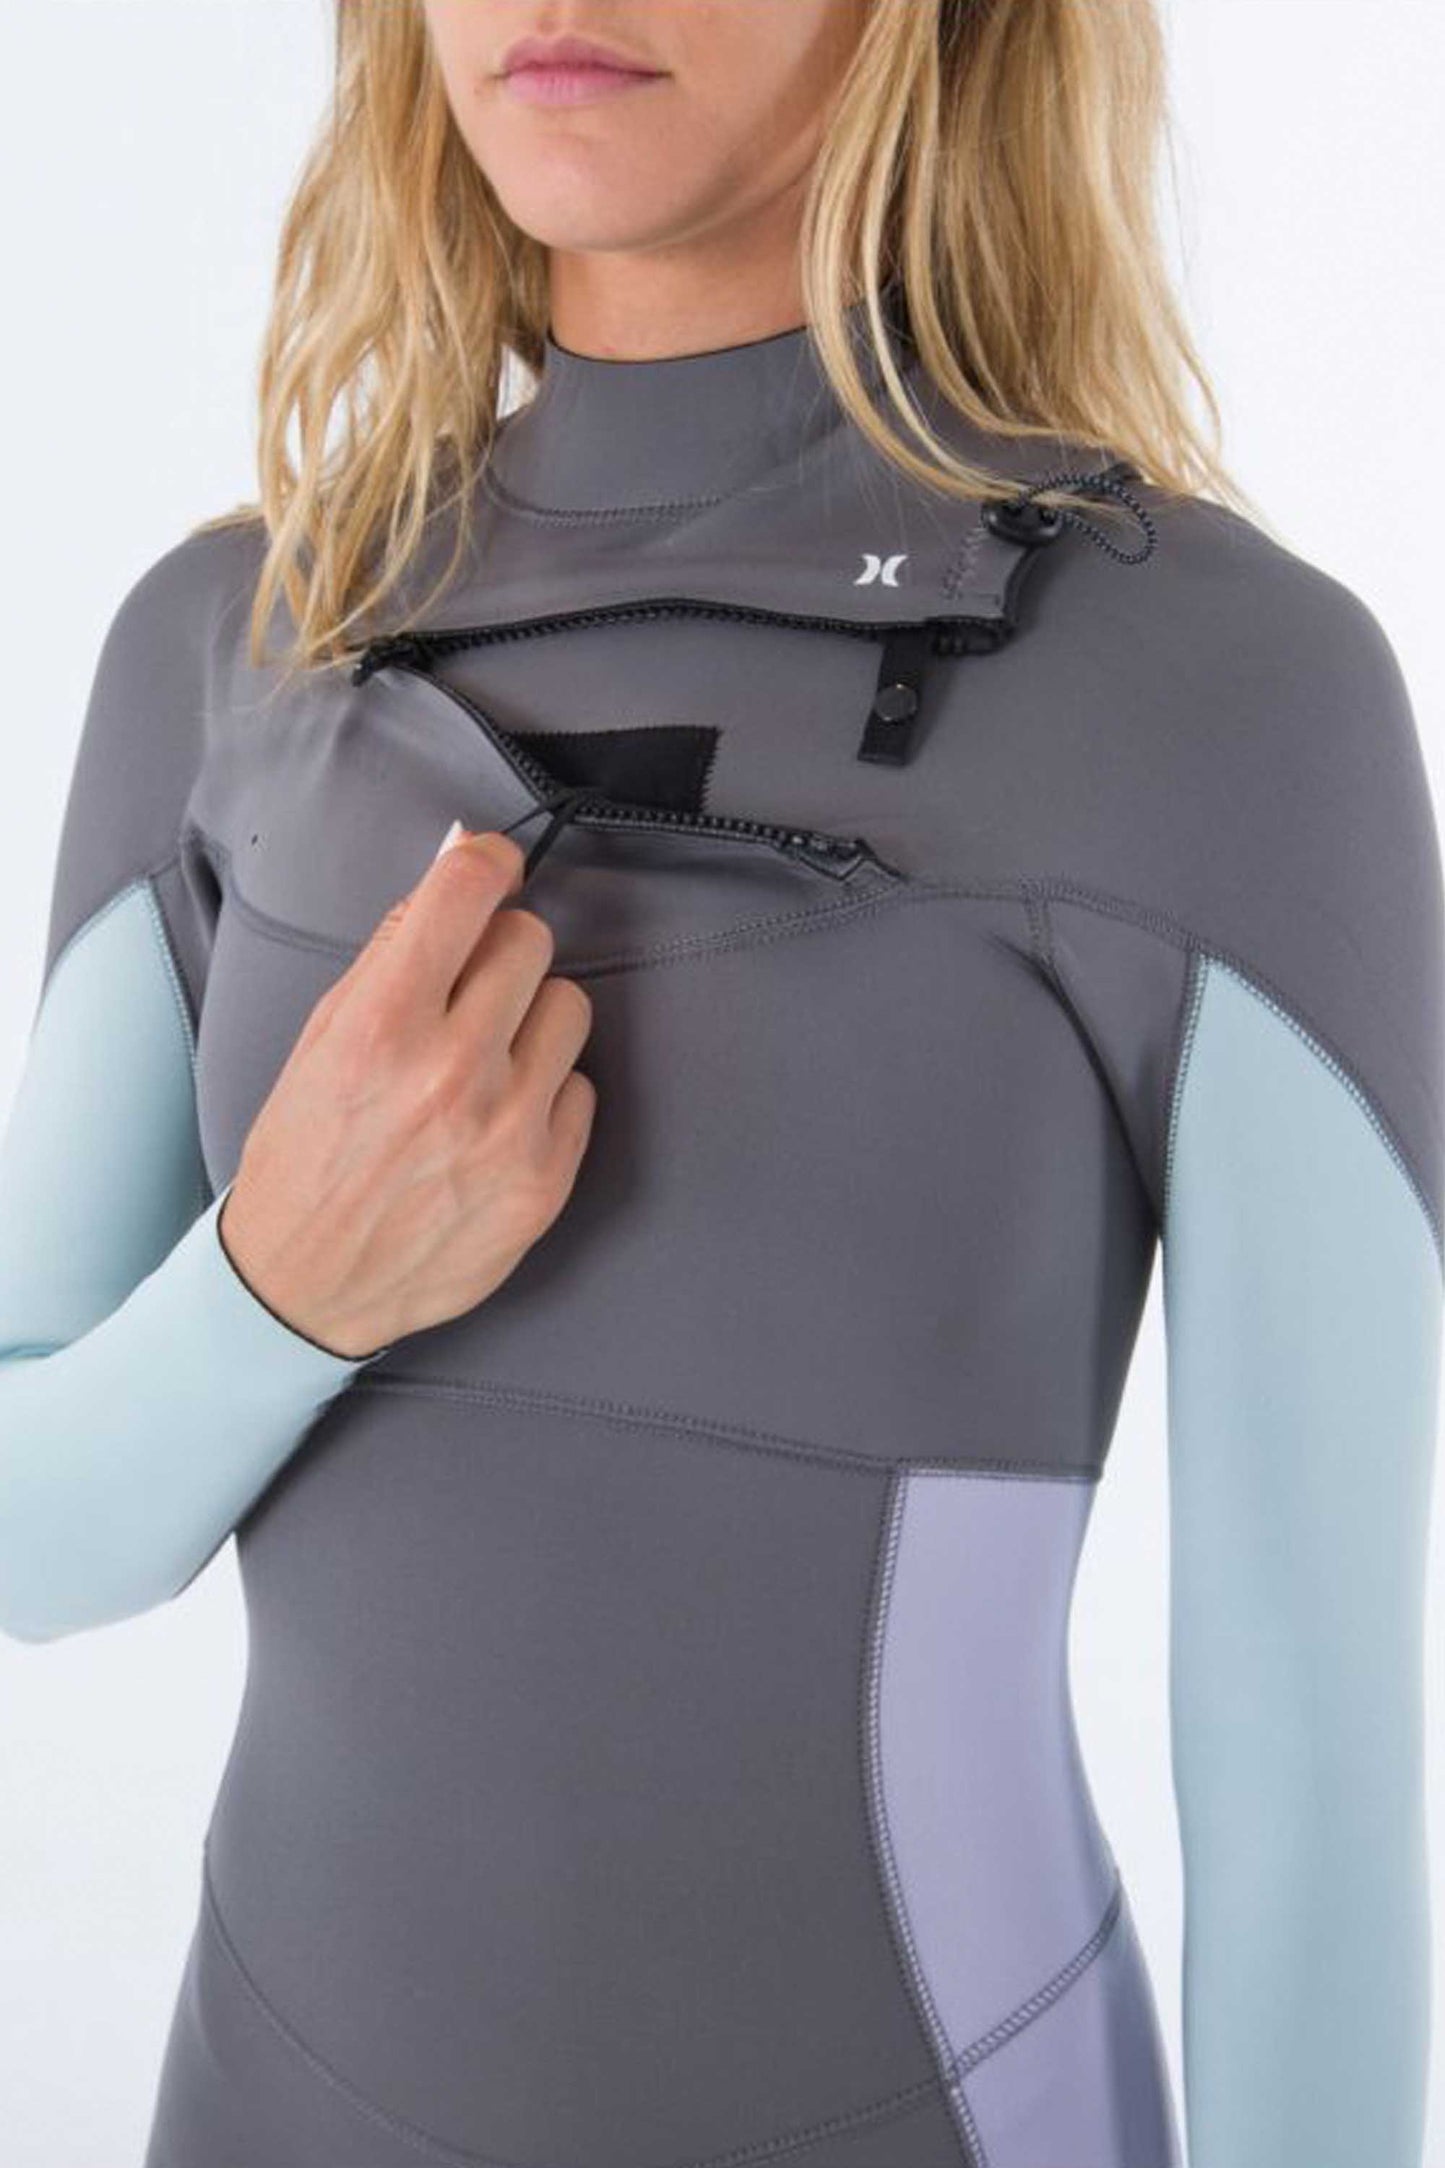 
                  
                    Pukas-Surf-Shop-Hurley-wetsuit-woman-3-2-fullsuit-women-advant-charcoal-gray
                  
                